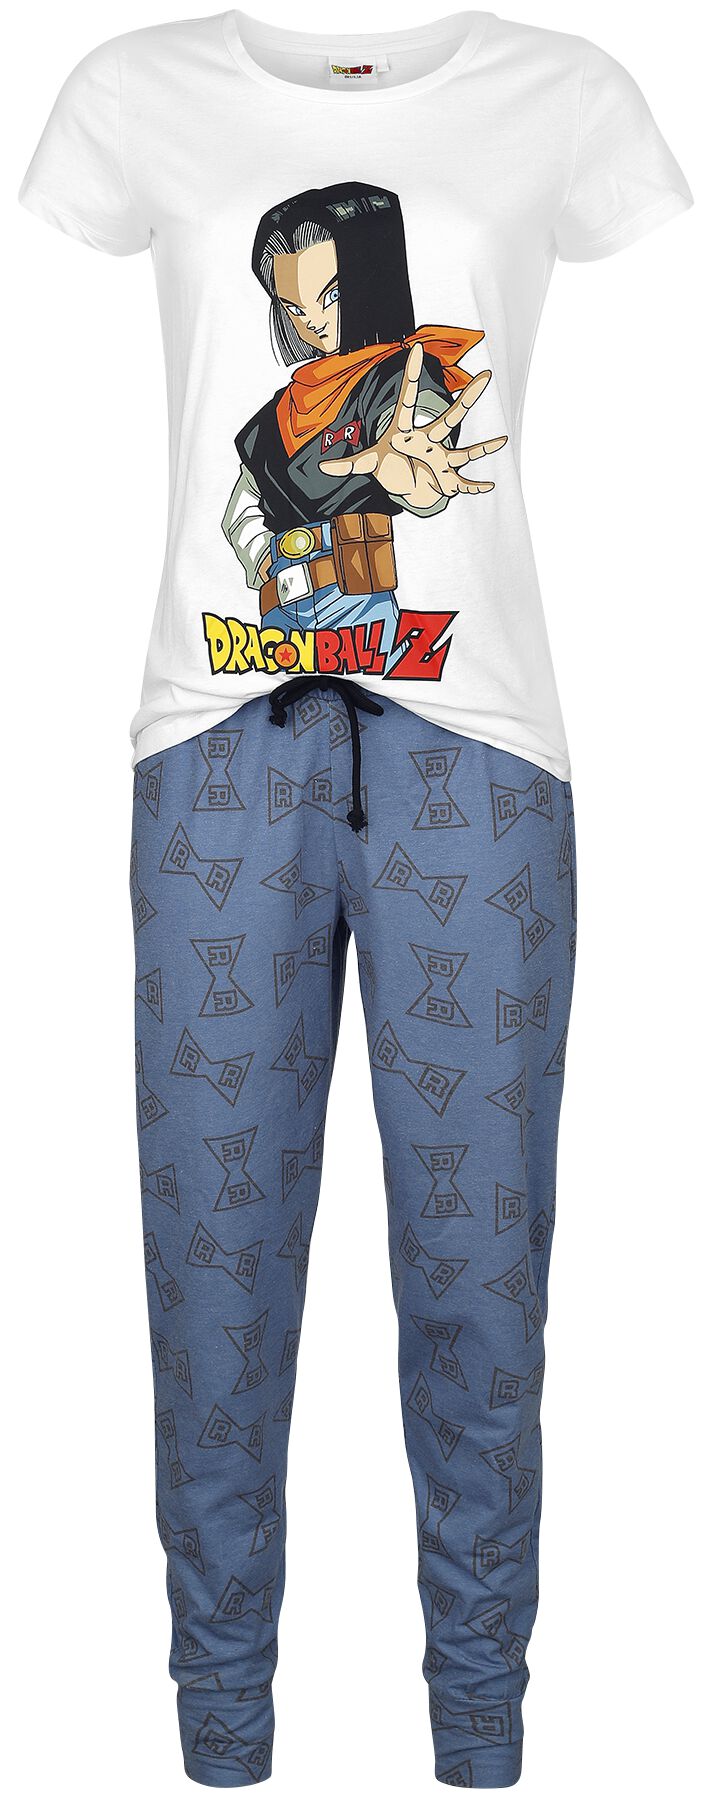 Dragon Ball - Gaming Schlafanzug - Z - Android 17 - S bis 3XL - für Damen - Größe 3XL - weiß/blau  - EMP exklusives Merchandise!